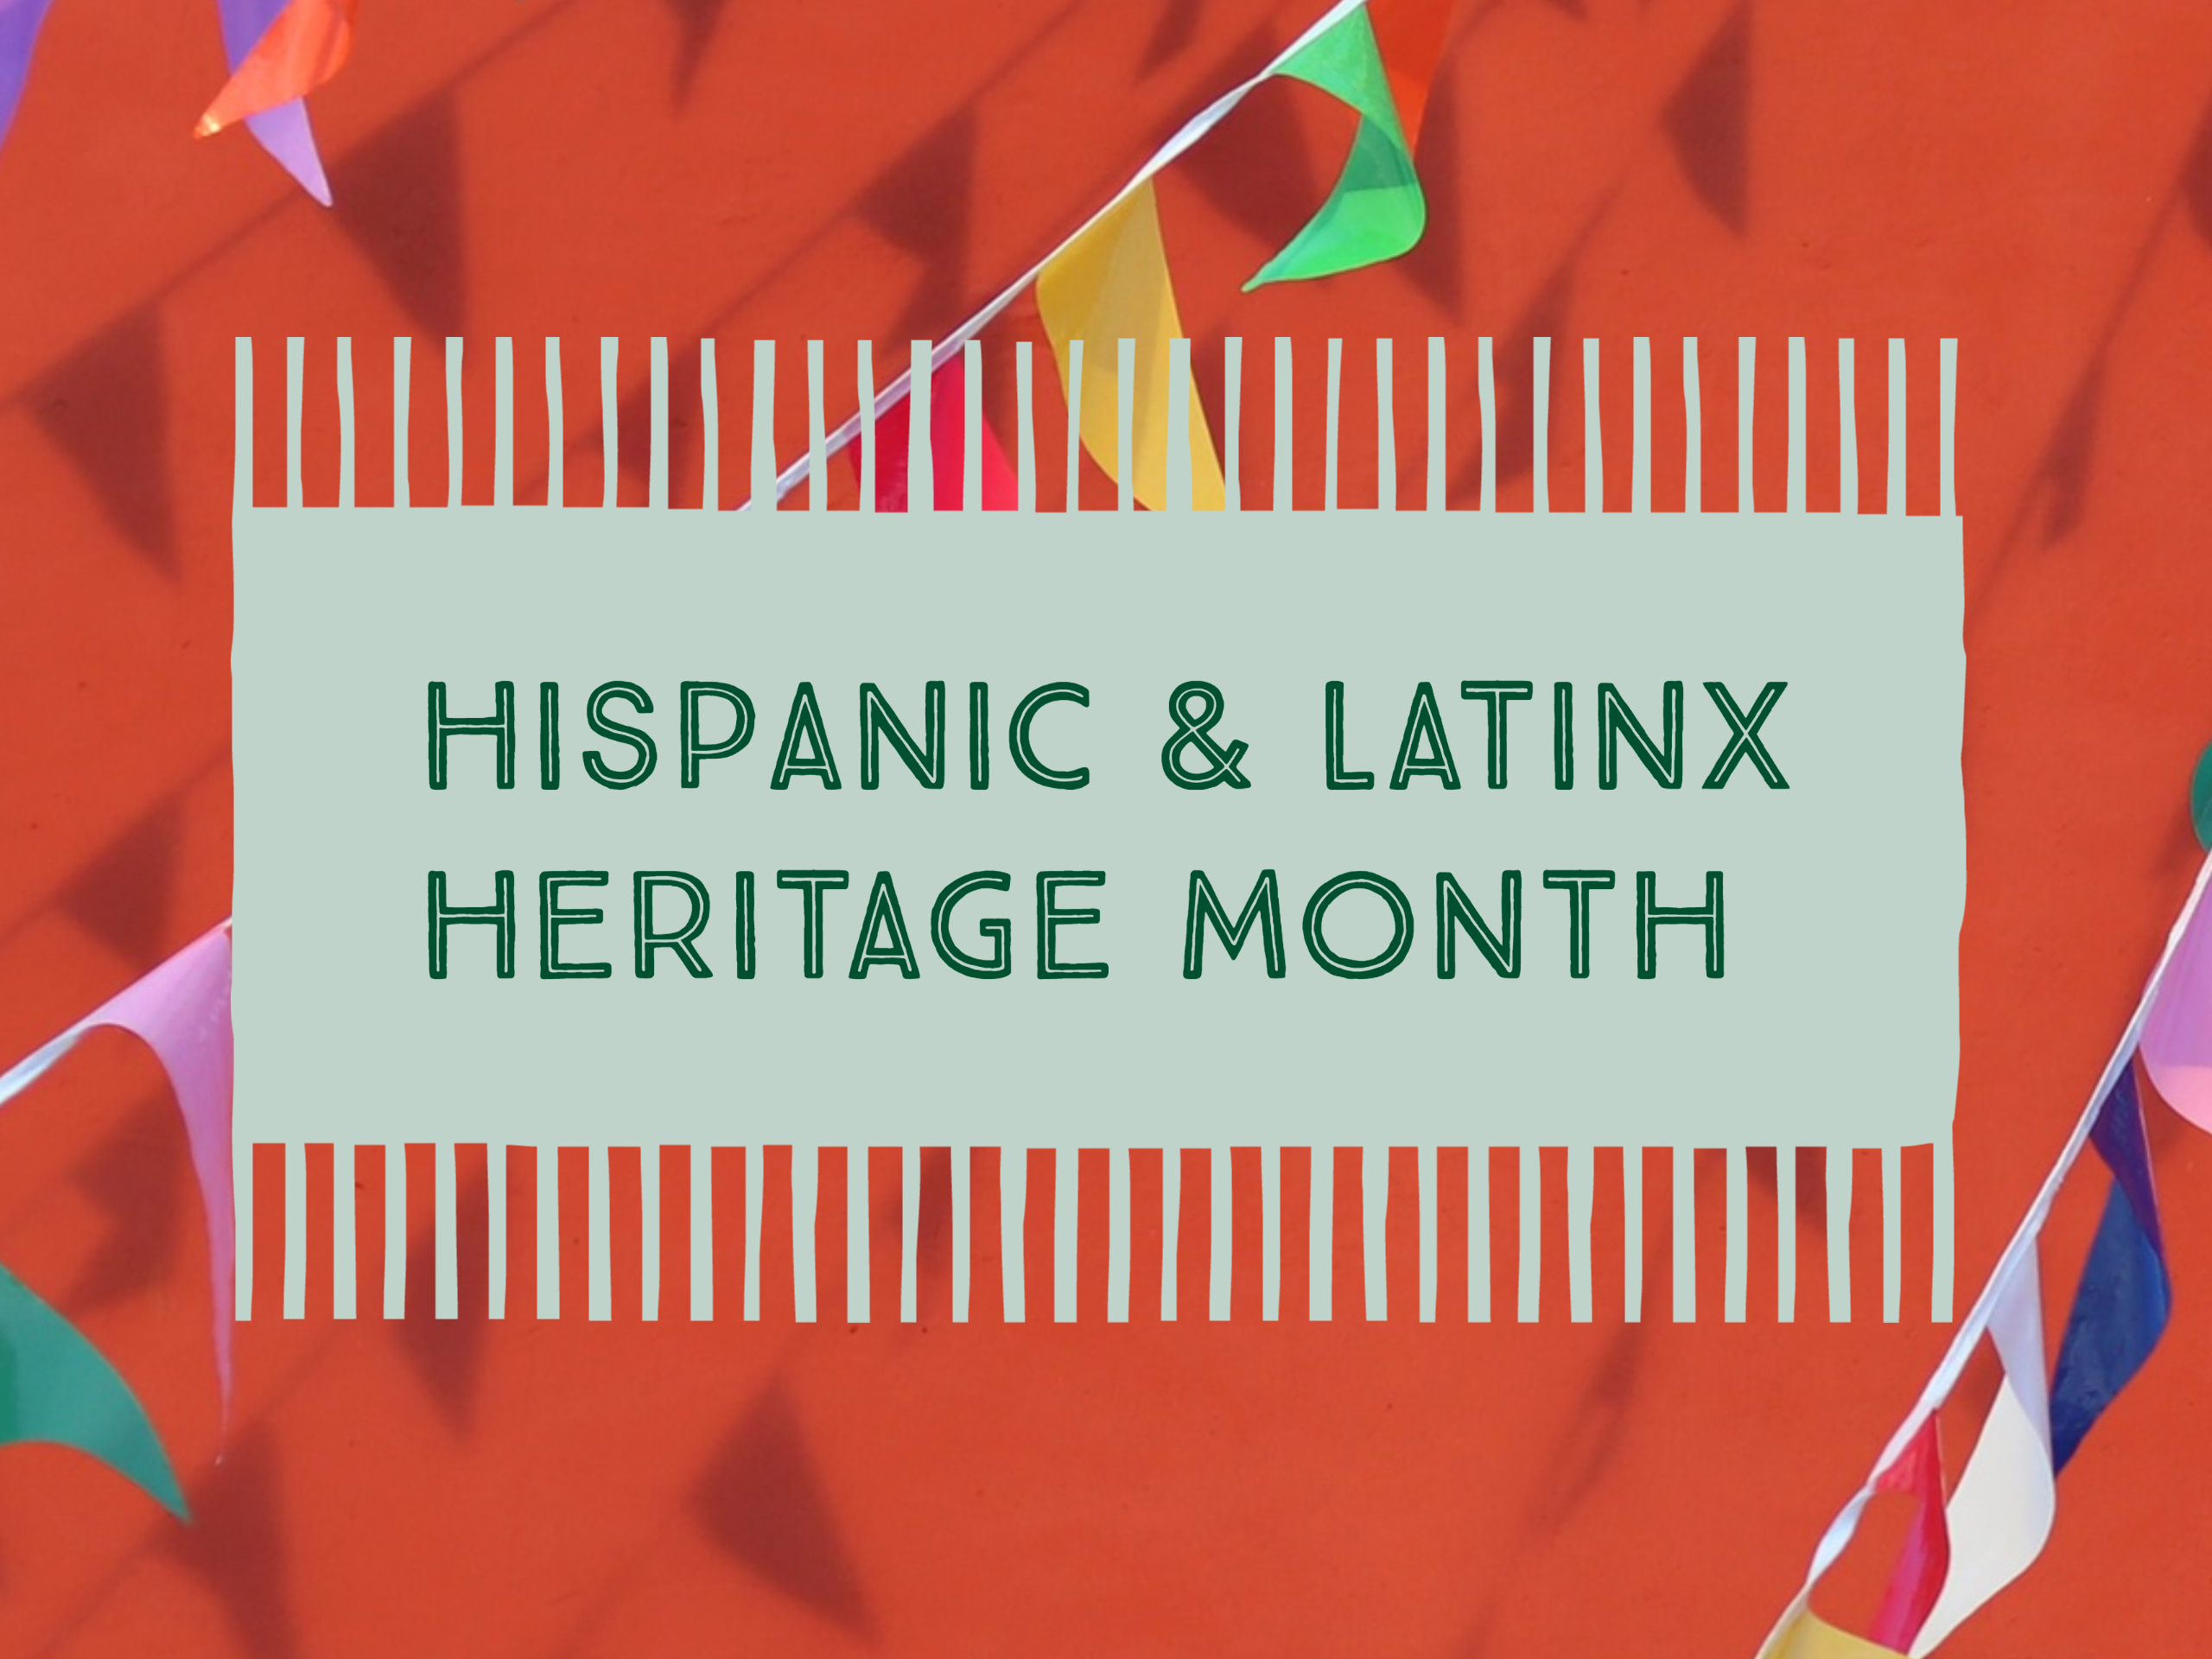 Hispanic & Latinx Heritage Month Celebration TU Libraries